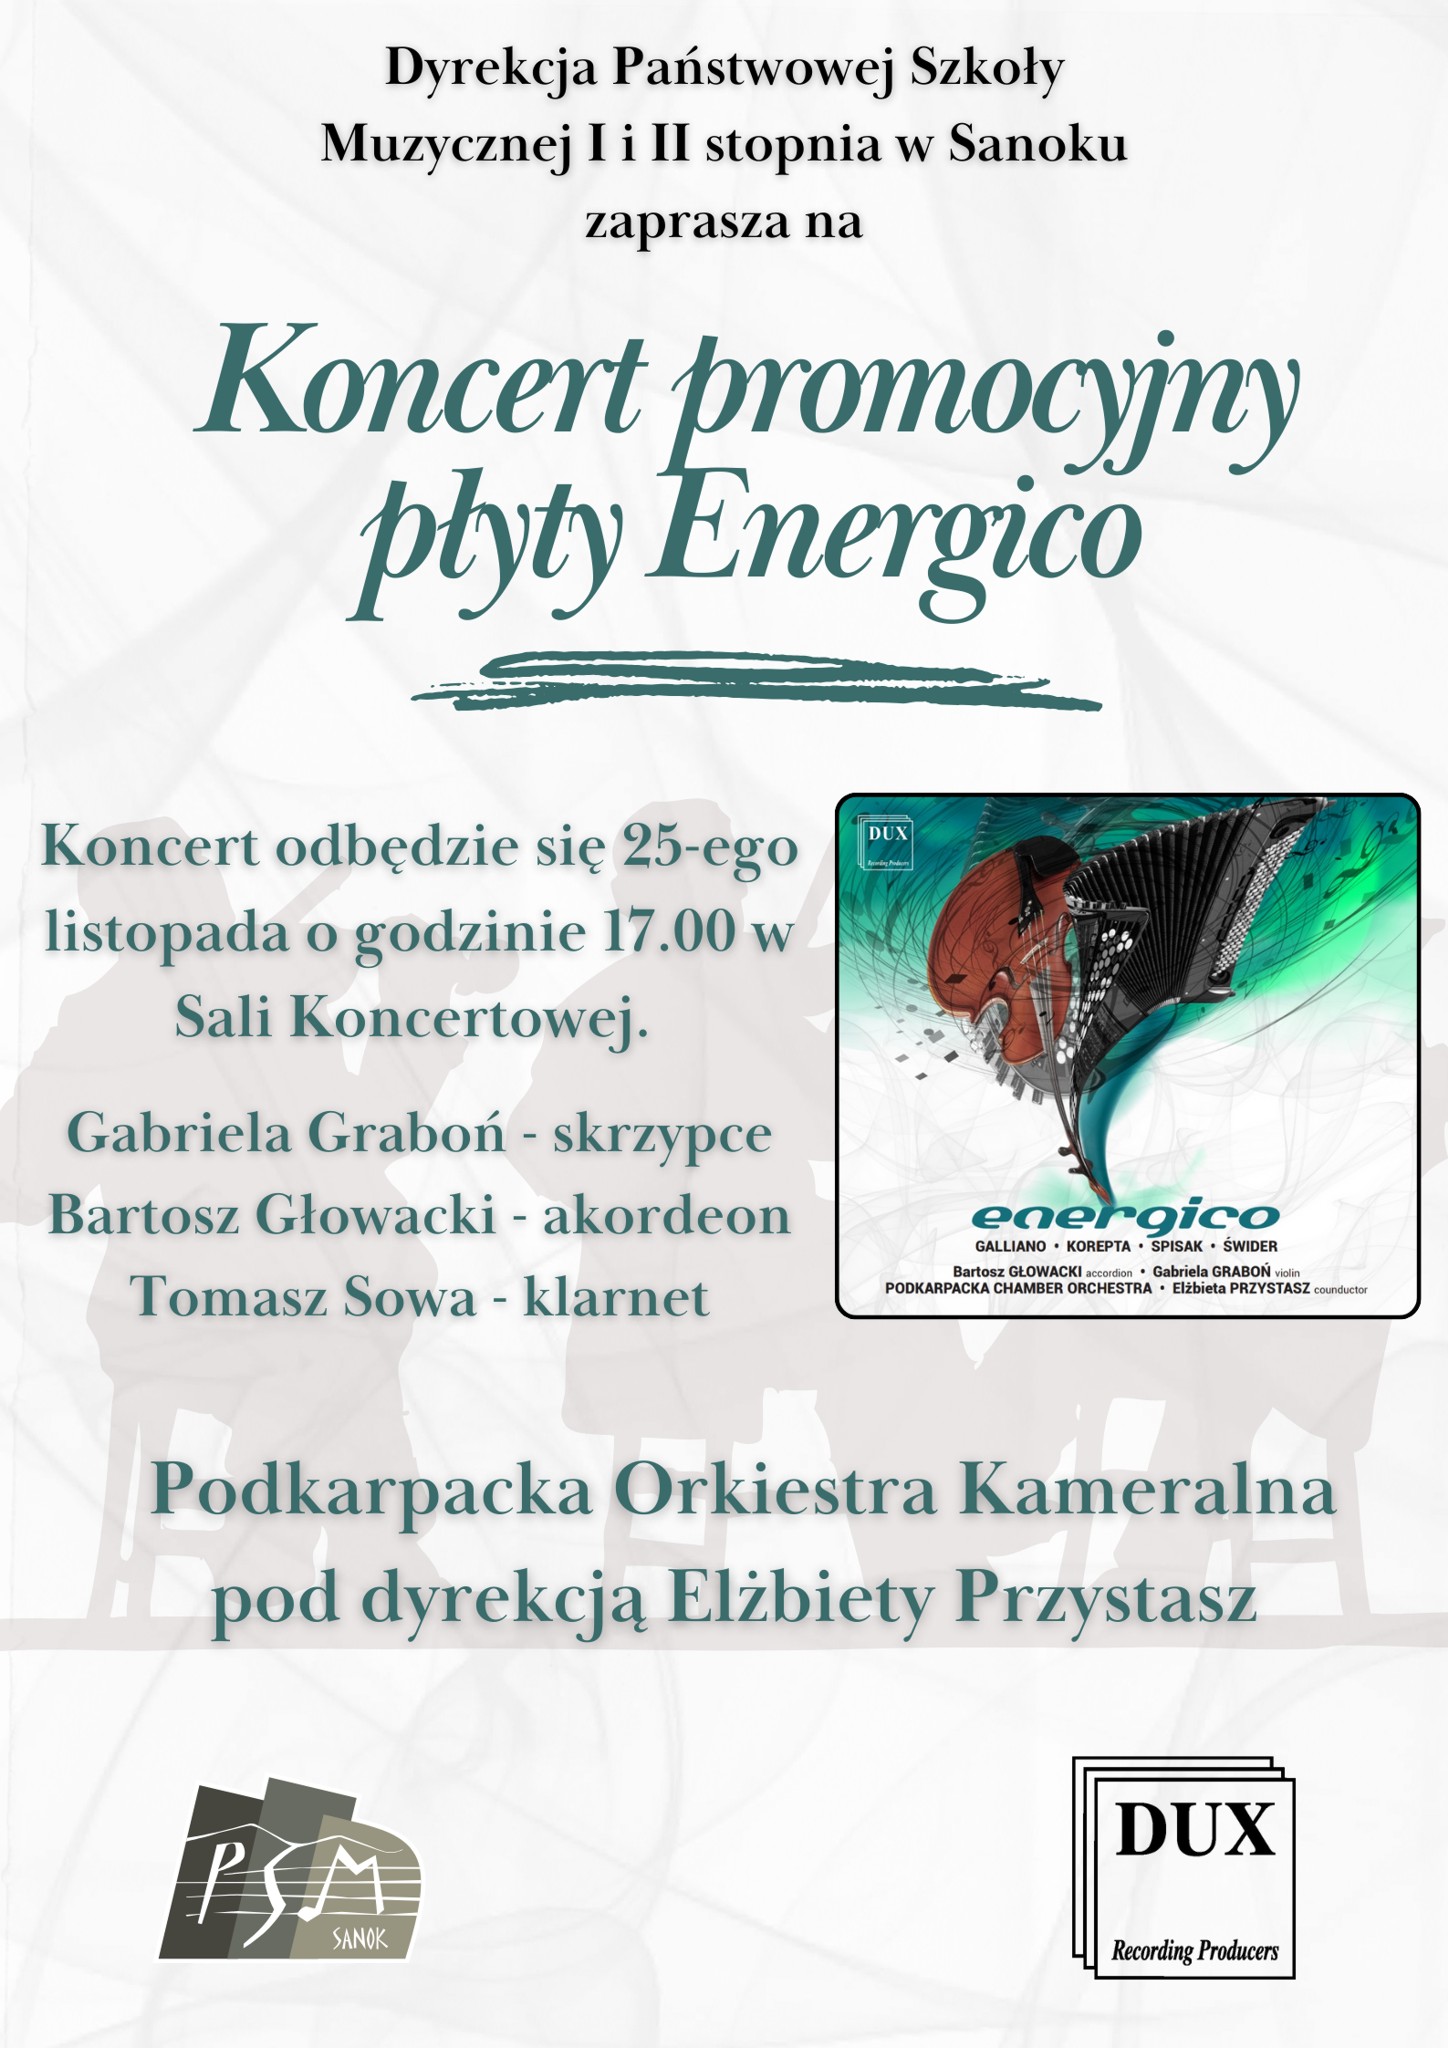 Plakat - Koncert promocyjny płyty Energico. Okładka płyty umieszczona na białym tle. Opis wydarzenia zielonymi literami.